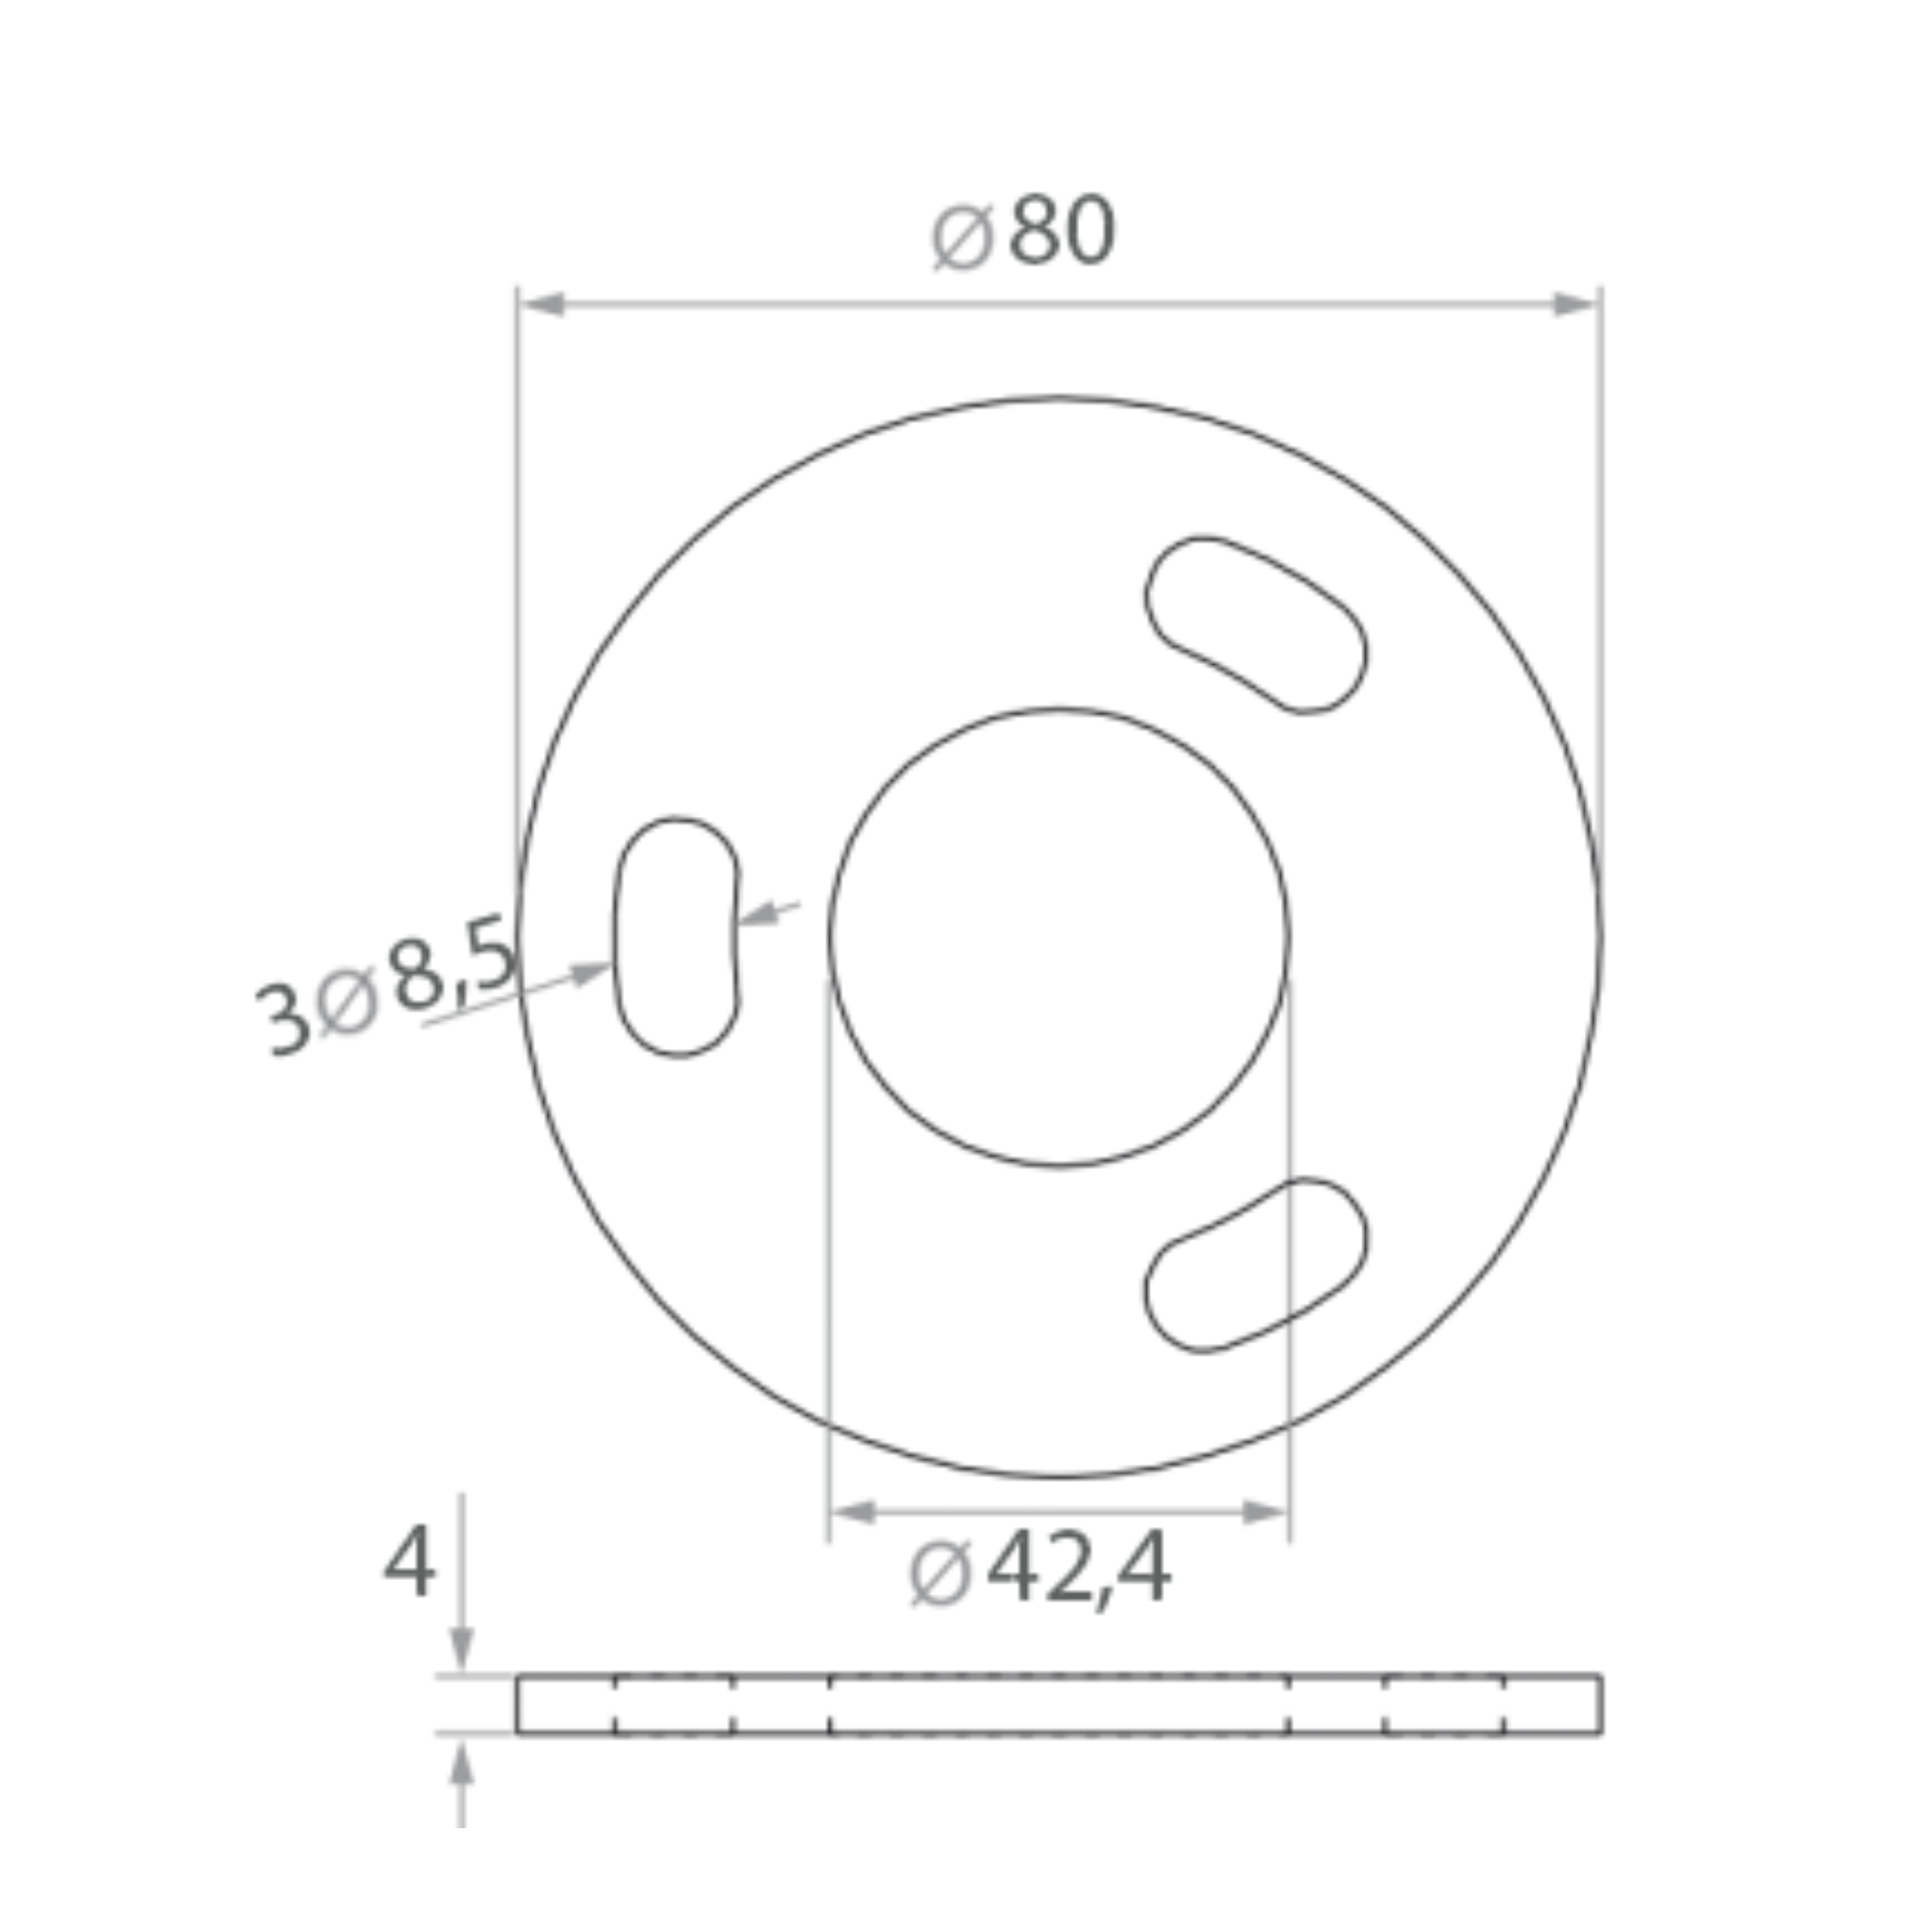 Bottom fastening with 2-3 screws (D80) - StroFIX